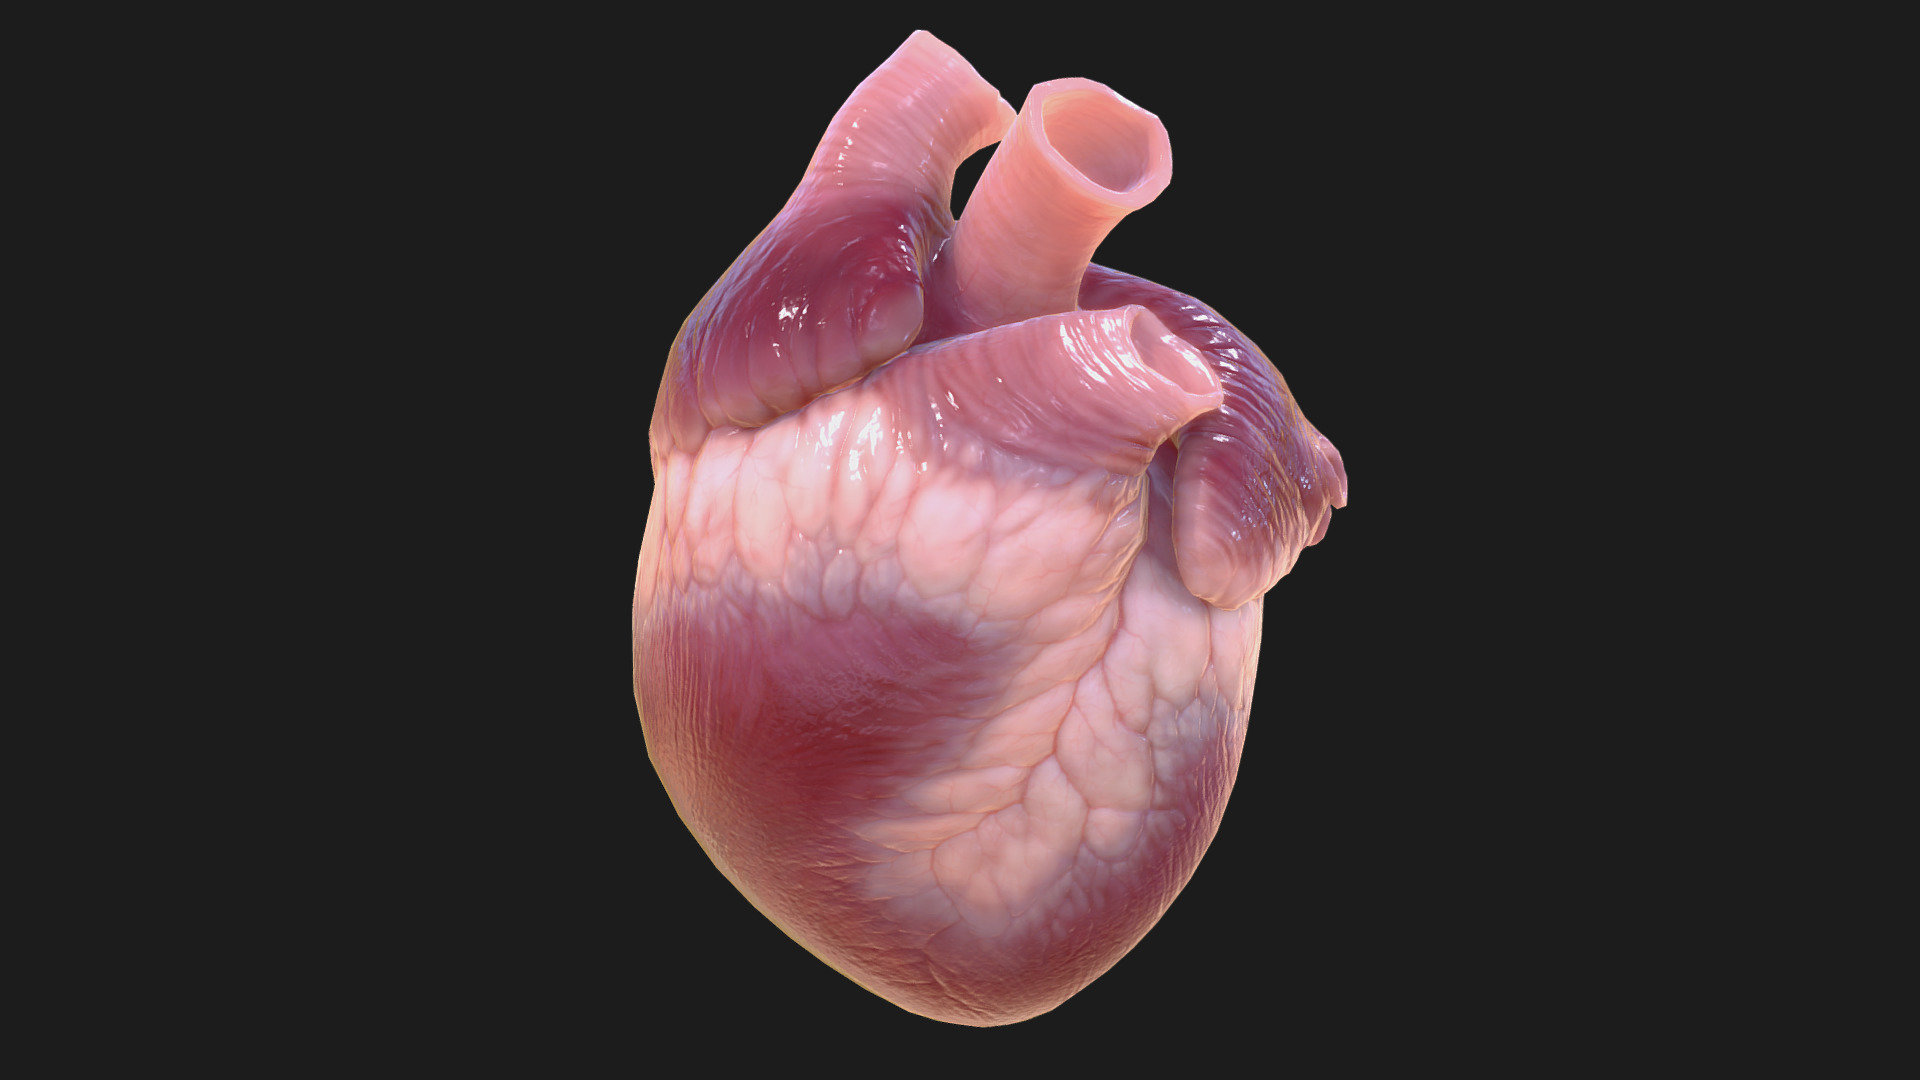 Pickable item for game.

For Pathologic game 

http://www.pathologic-game.com/index.php?language=en

by Ice-Pick Lodge

http://ice-pick.com/en/ - Pathologic (2016). Heart - 3D model by goldengrifon 3d model